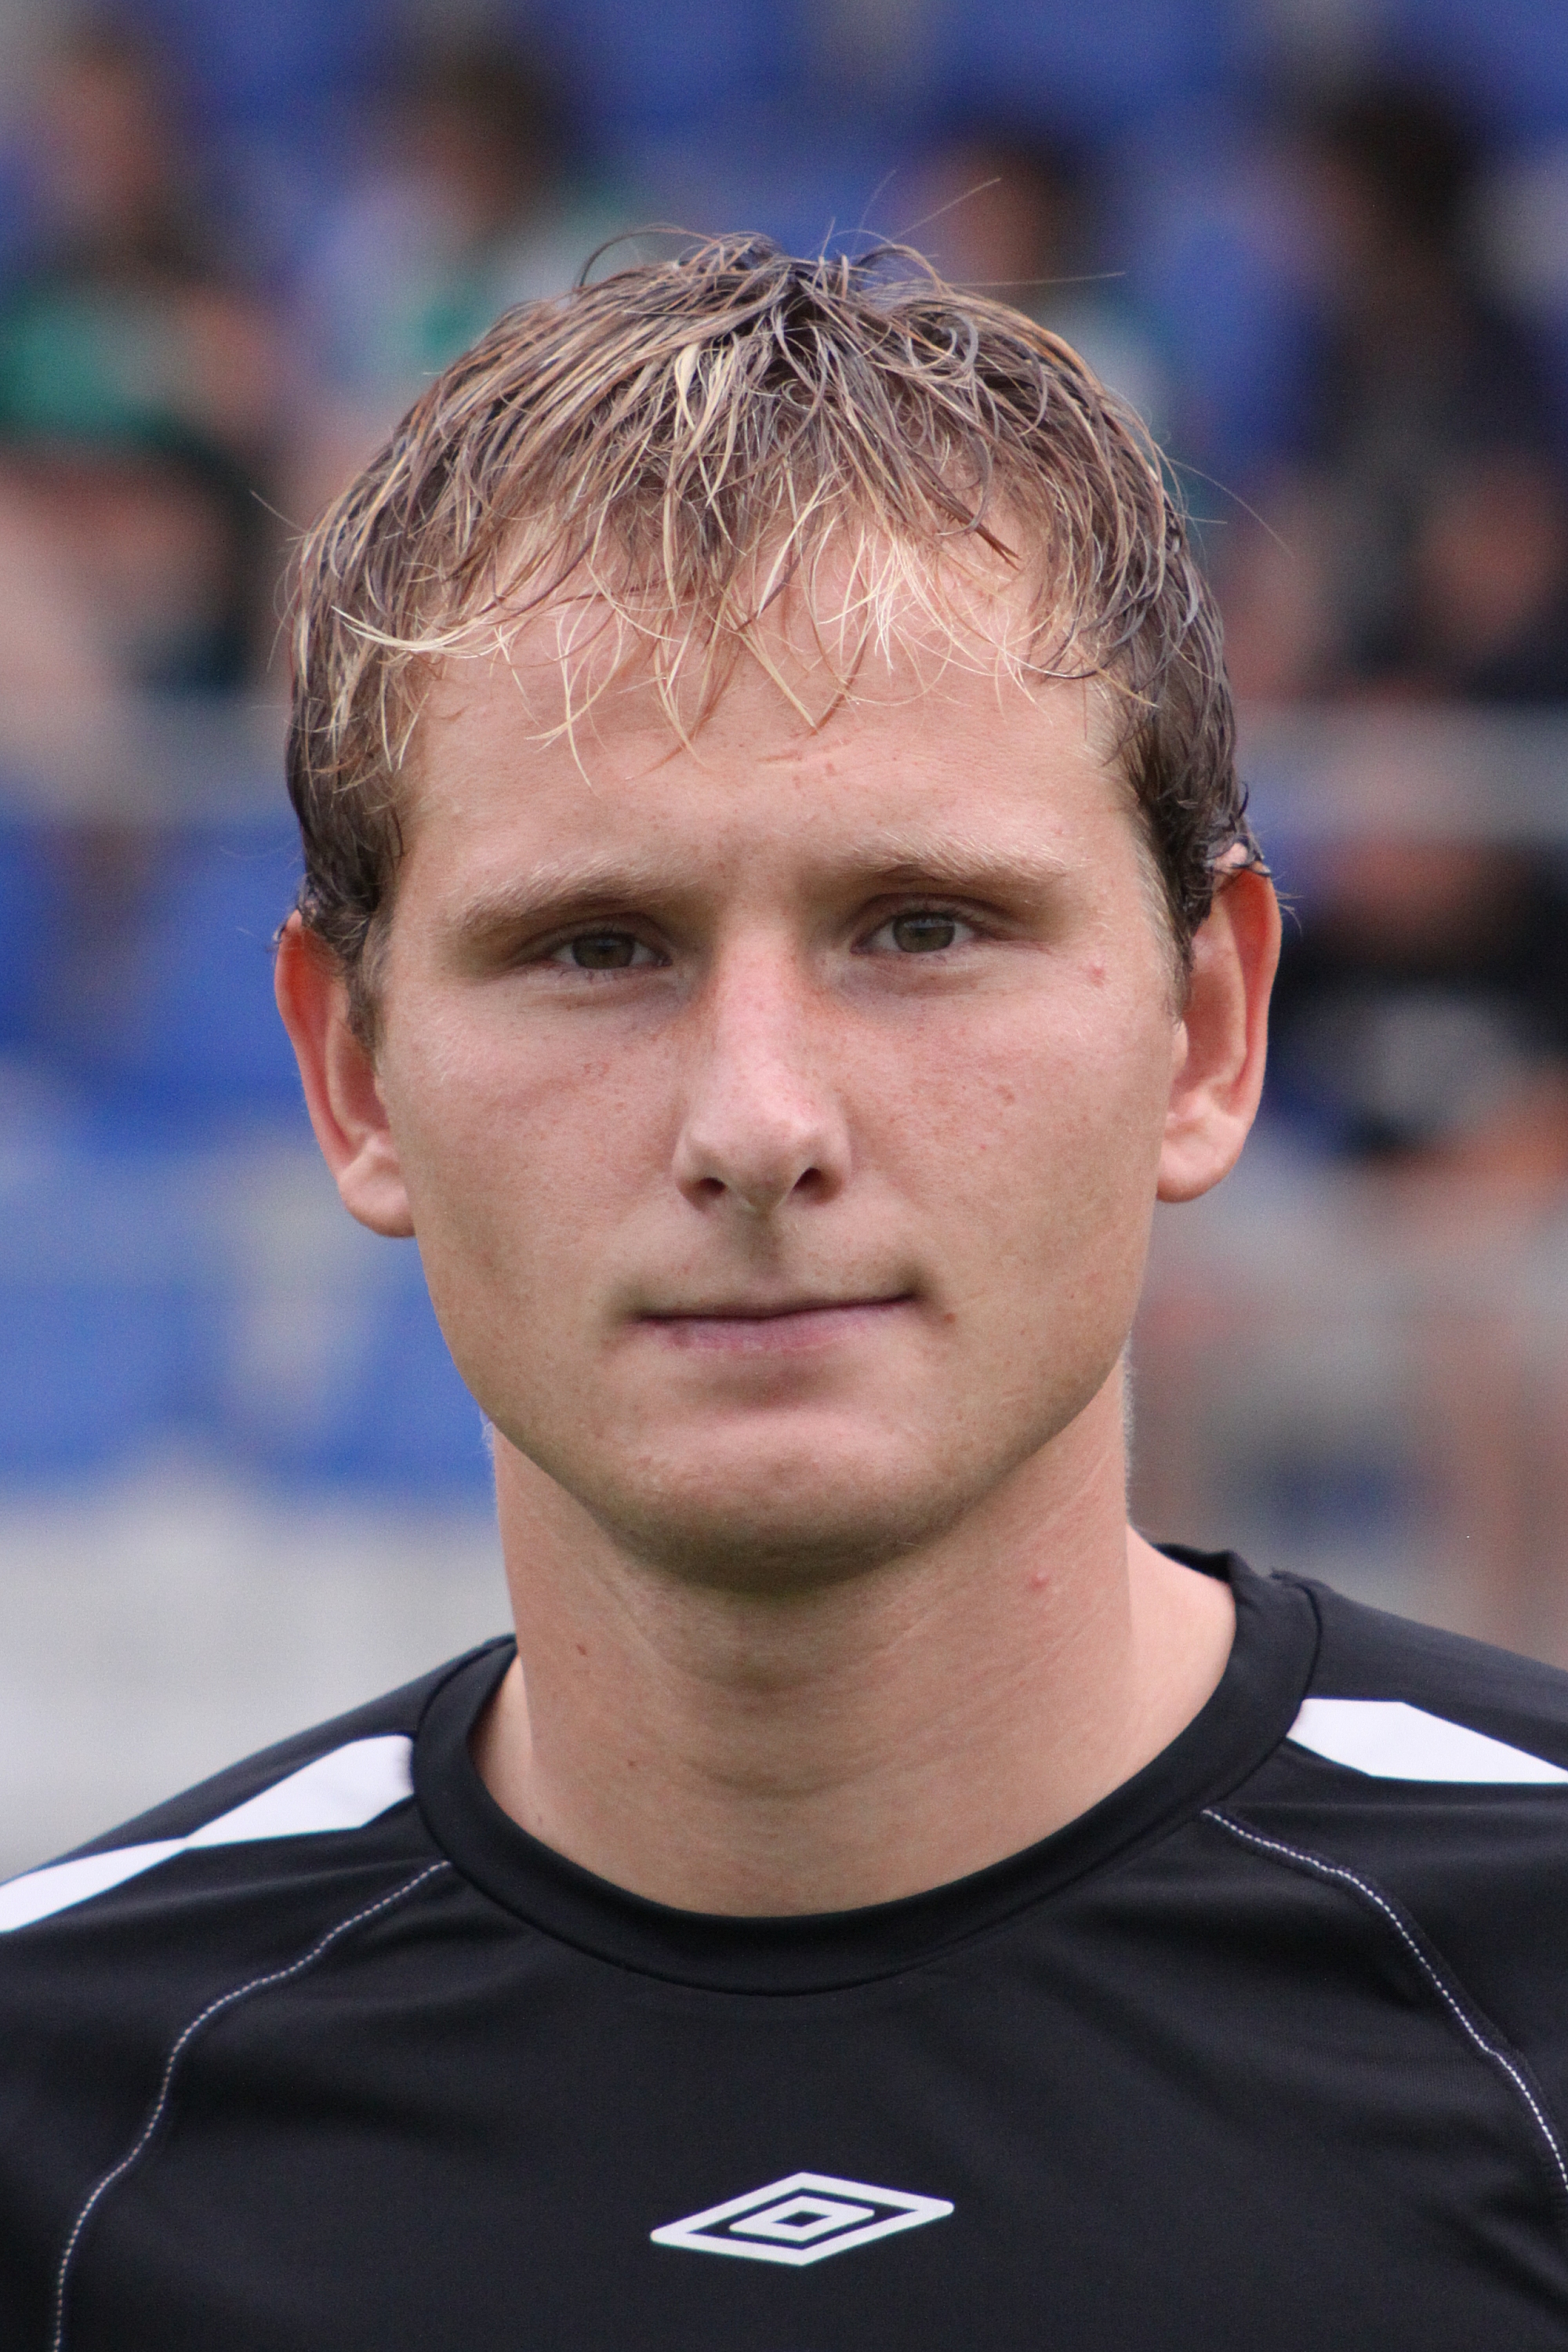 Jiří Valenta (footballer)